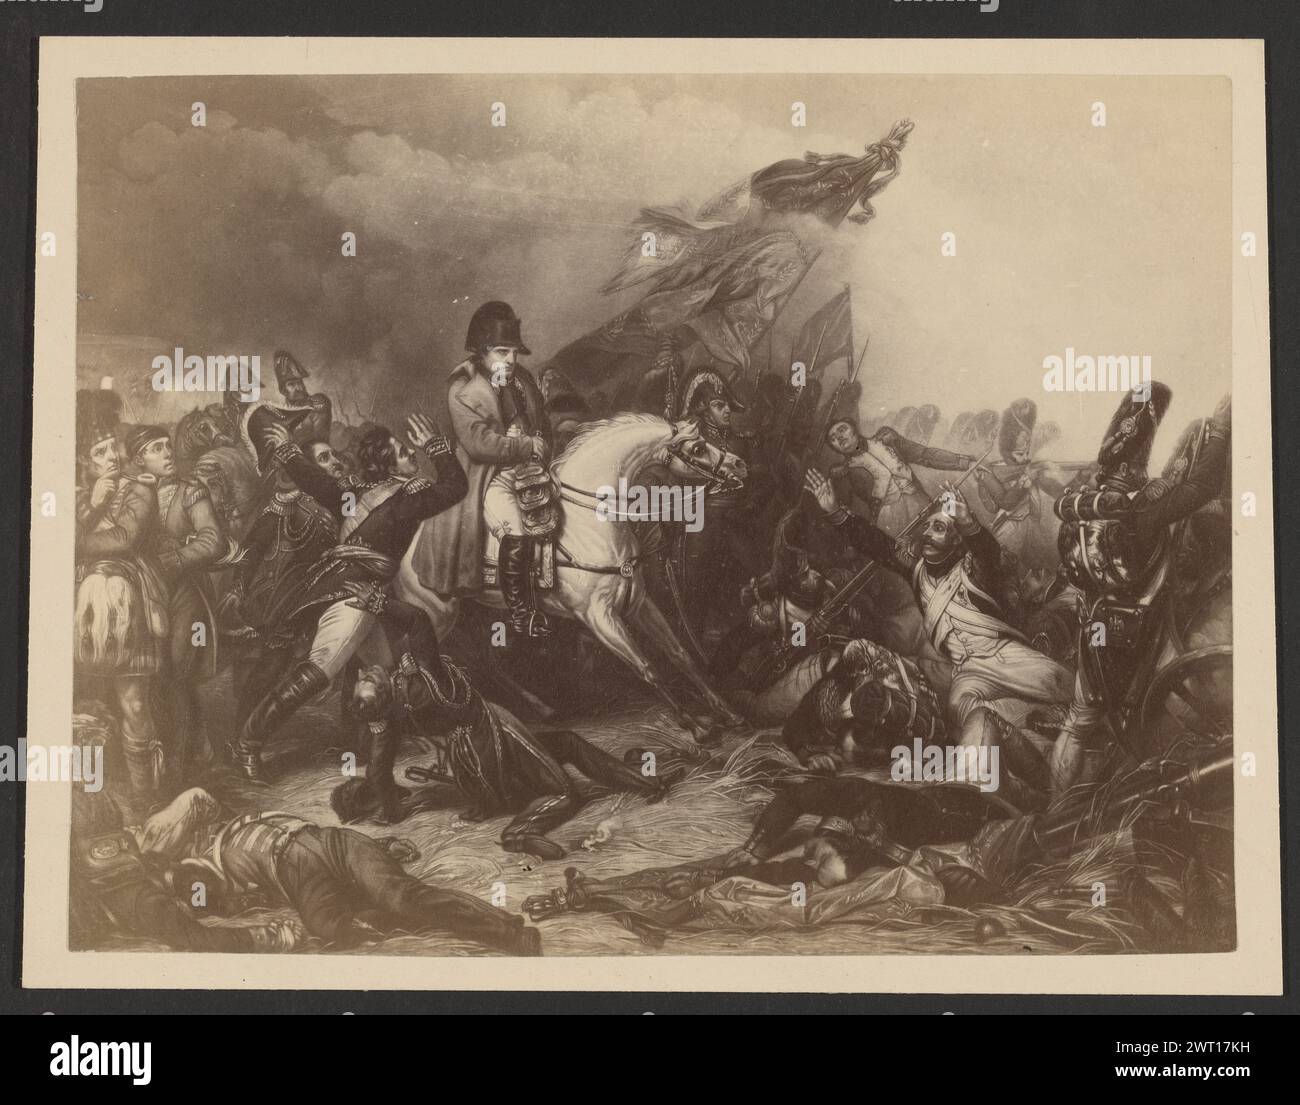 Charles de Steubens „Napoleon in der Schlacht von Waterloo“. Unbekannt, Fotograf etwa 1870–1890 Gemälde, das Napoleon zu Pferd inmitten einer Schlacht darstellt. Er ist von Soldaten umgeben, von denen einige auf den Boden gefallen sind. Neben dem Pferd wird ein Fahnenmast mit zerrissenen Fahnen gehoben. (Verso, Halterung) Mitte, Bleistift: 'Waterloo'; Stockfoto